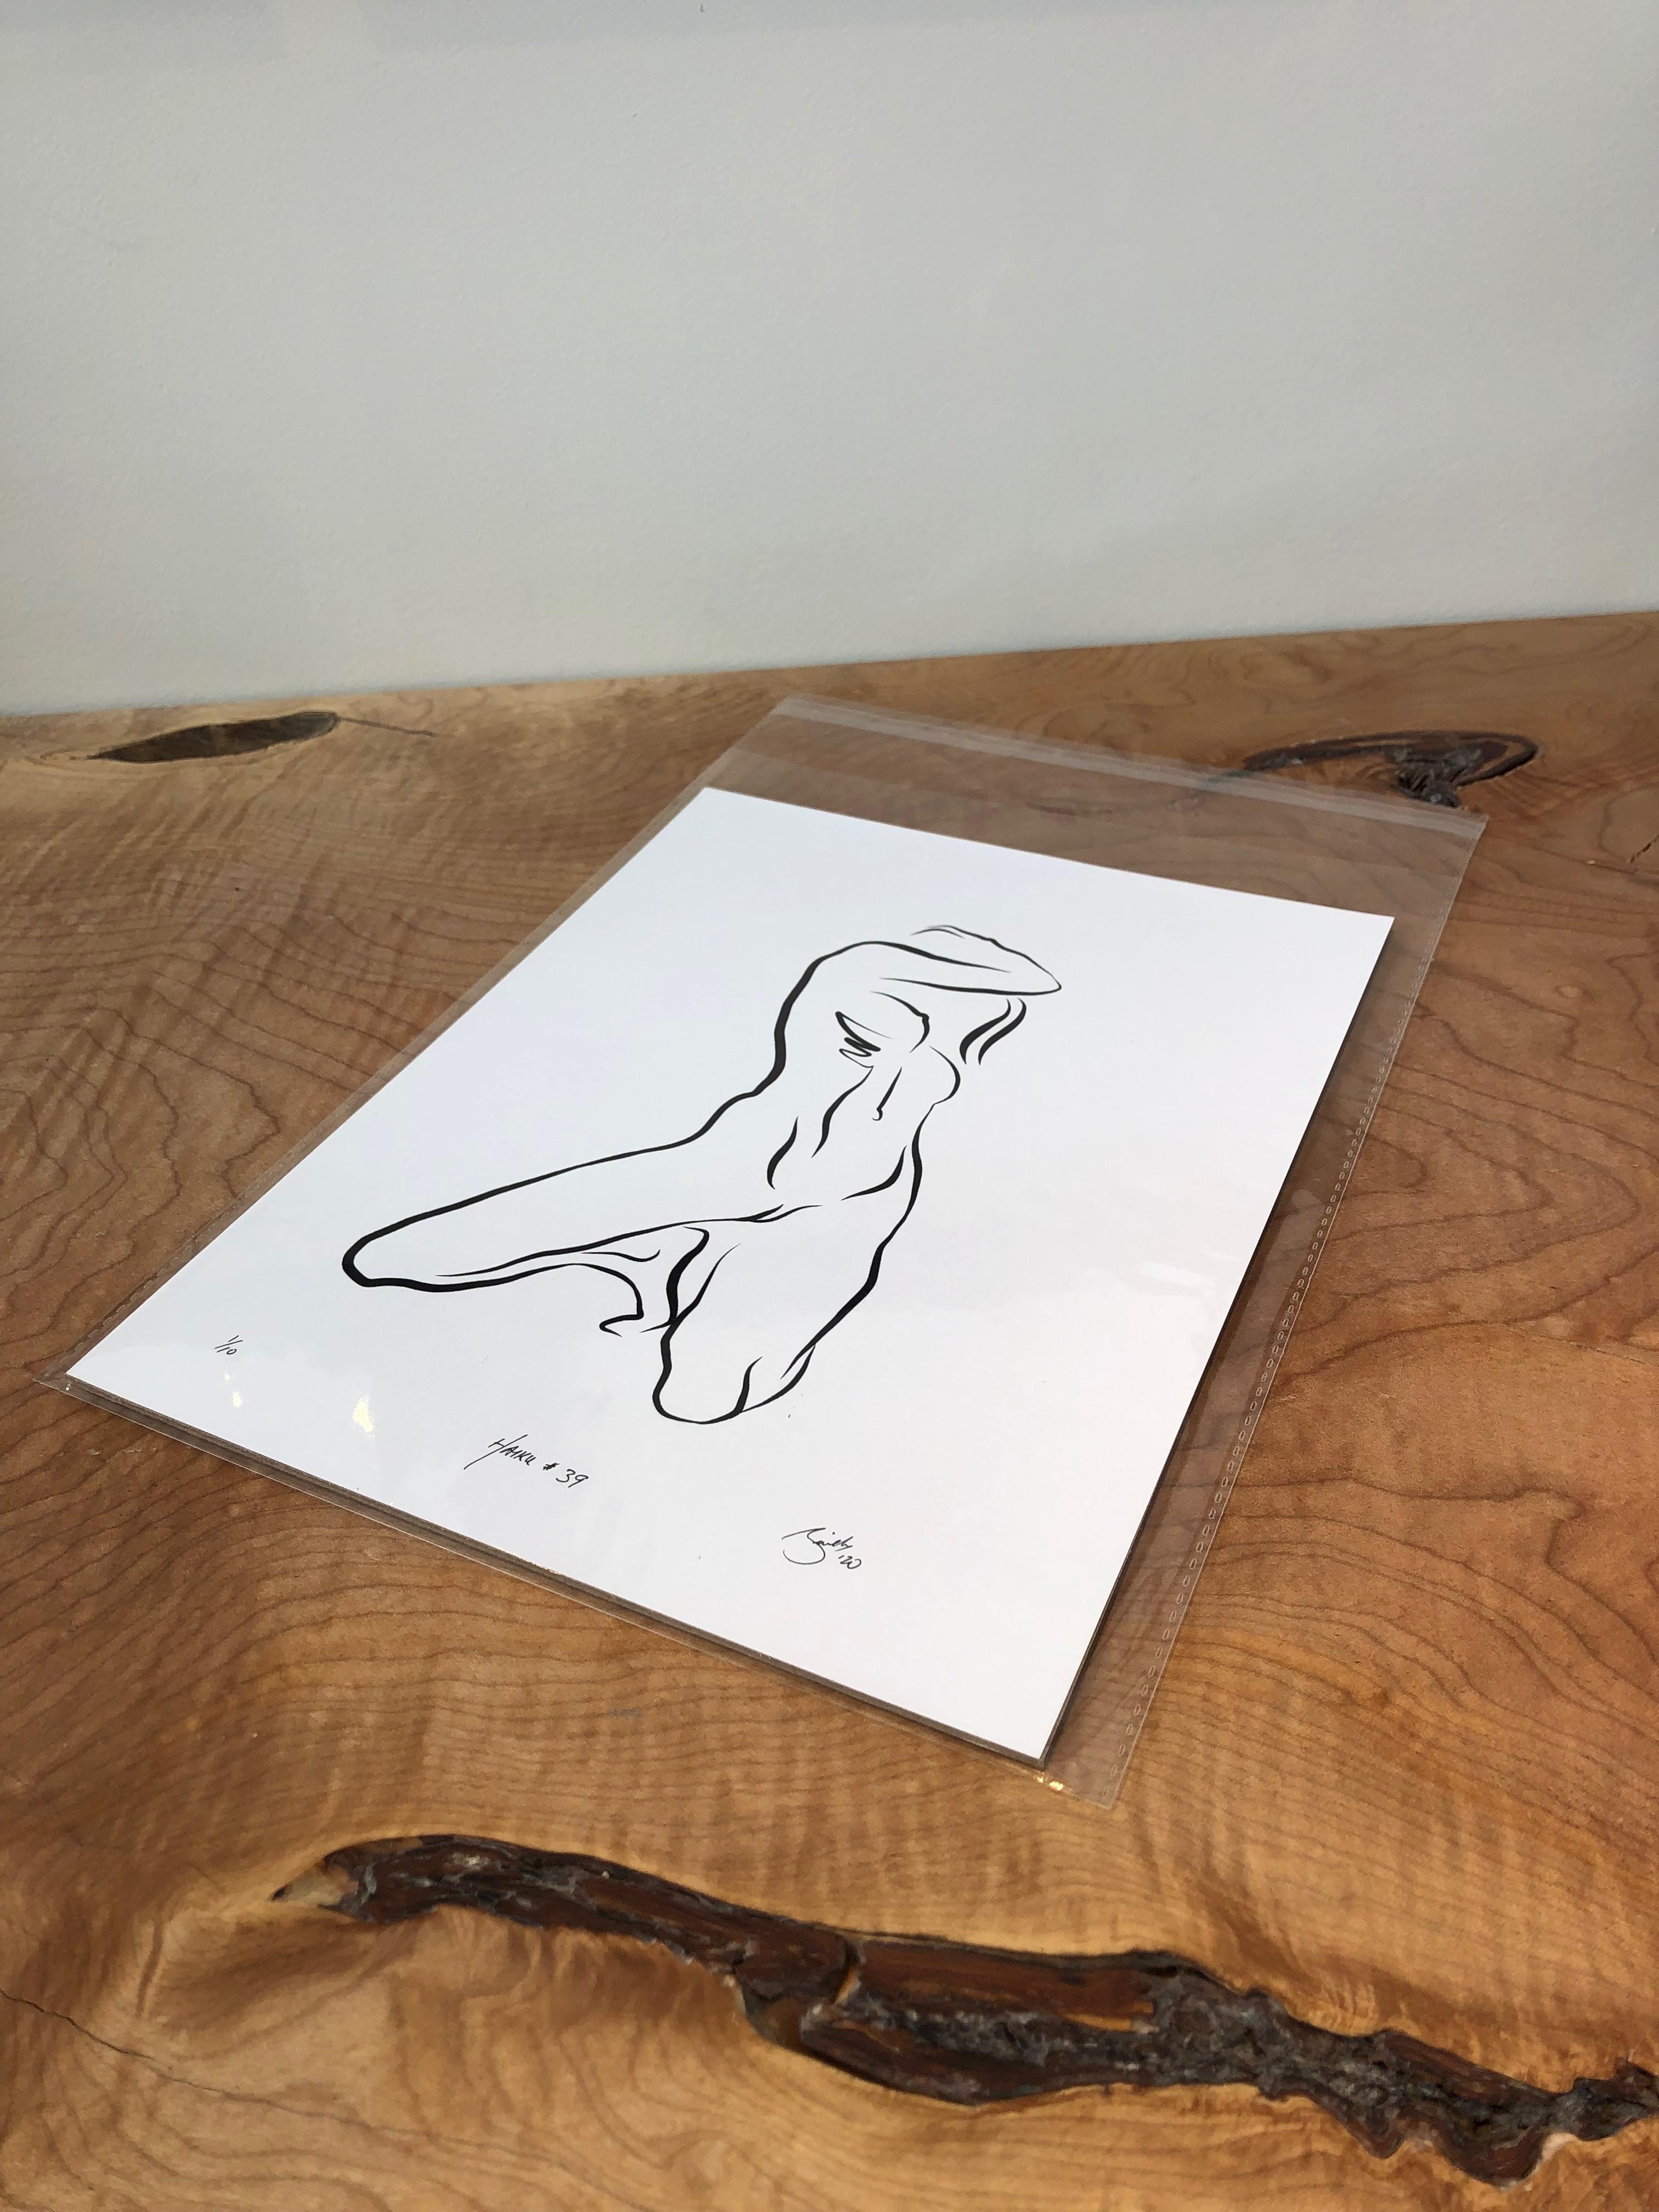 Haiku #39, 1/50 - Digital Vector Drawing Kneeling Female Nude Woman Figure - Print by Michael Binkley